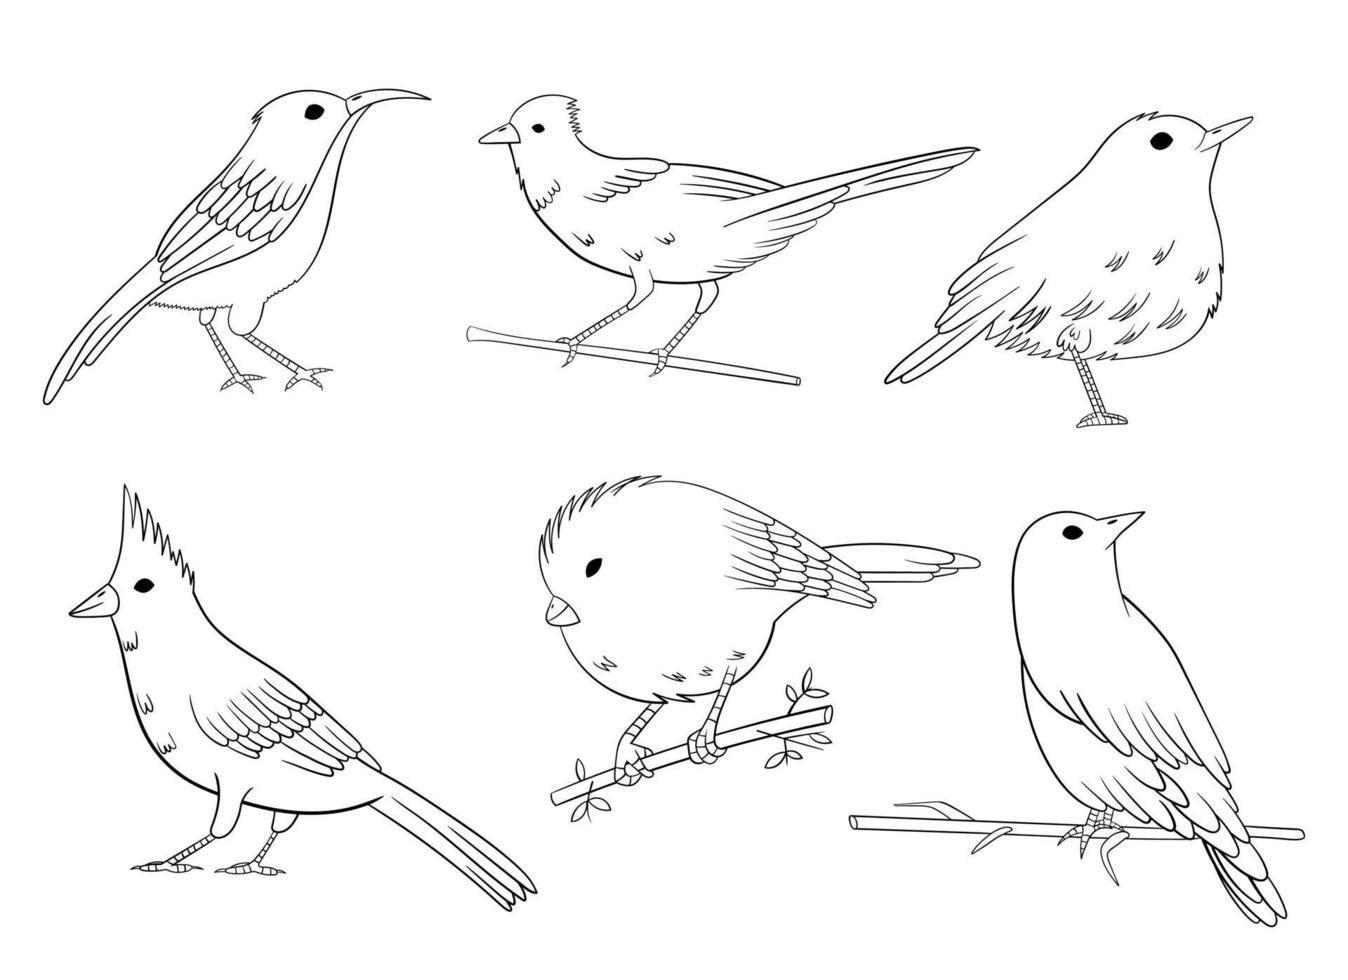 vogels stellen vectorontwerpillustratie in die op witte achtergrond wordt geïsoleerd vector